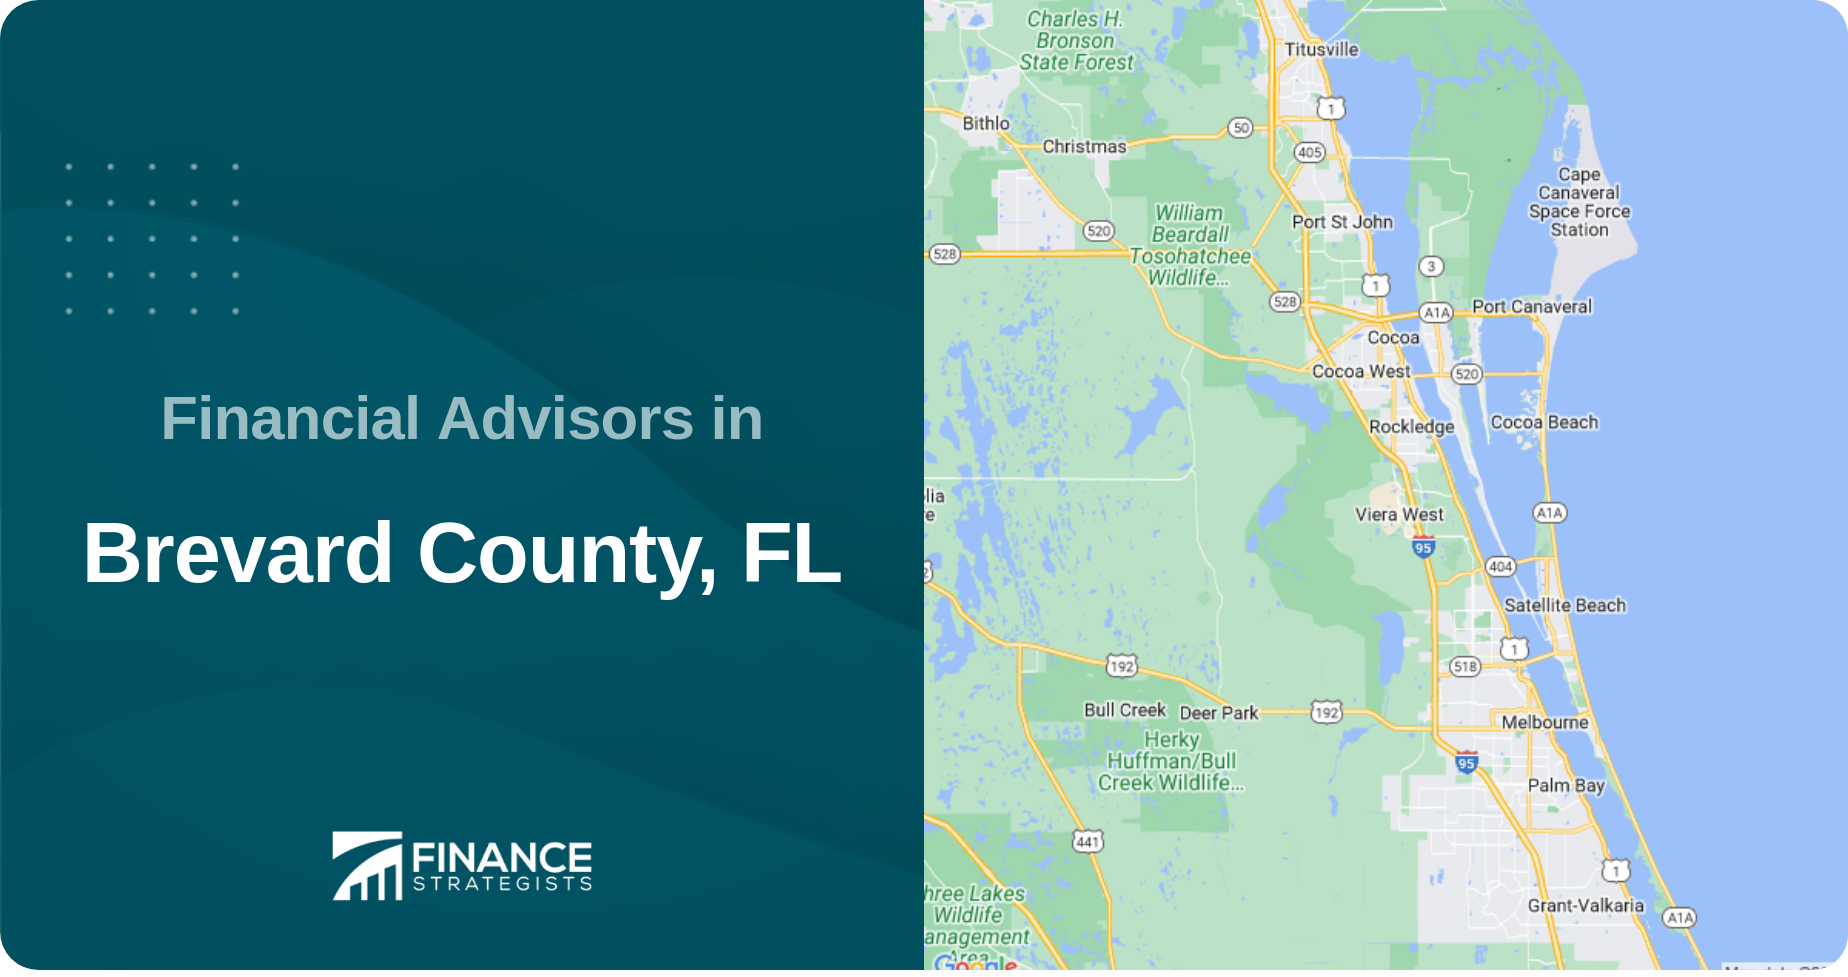 Financial Advisors in Brevard County, FL